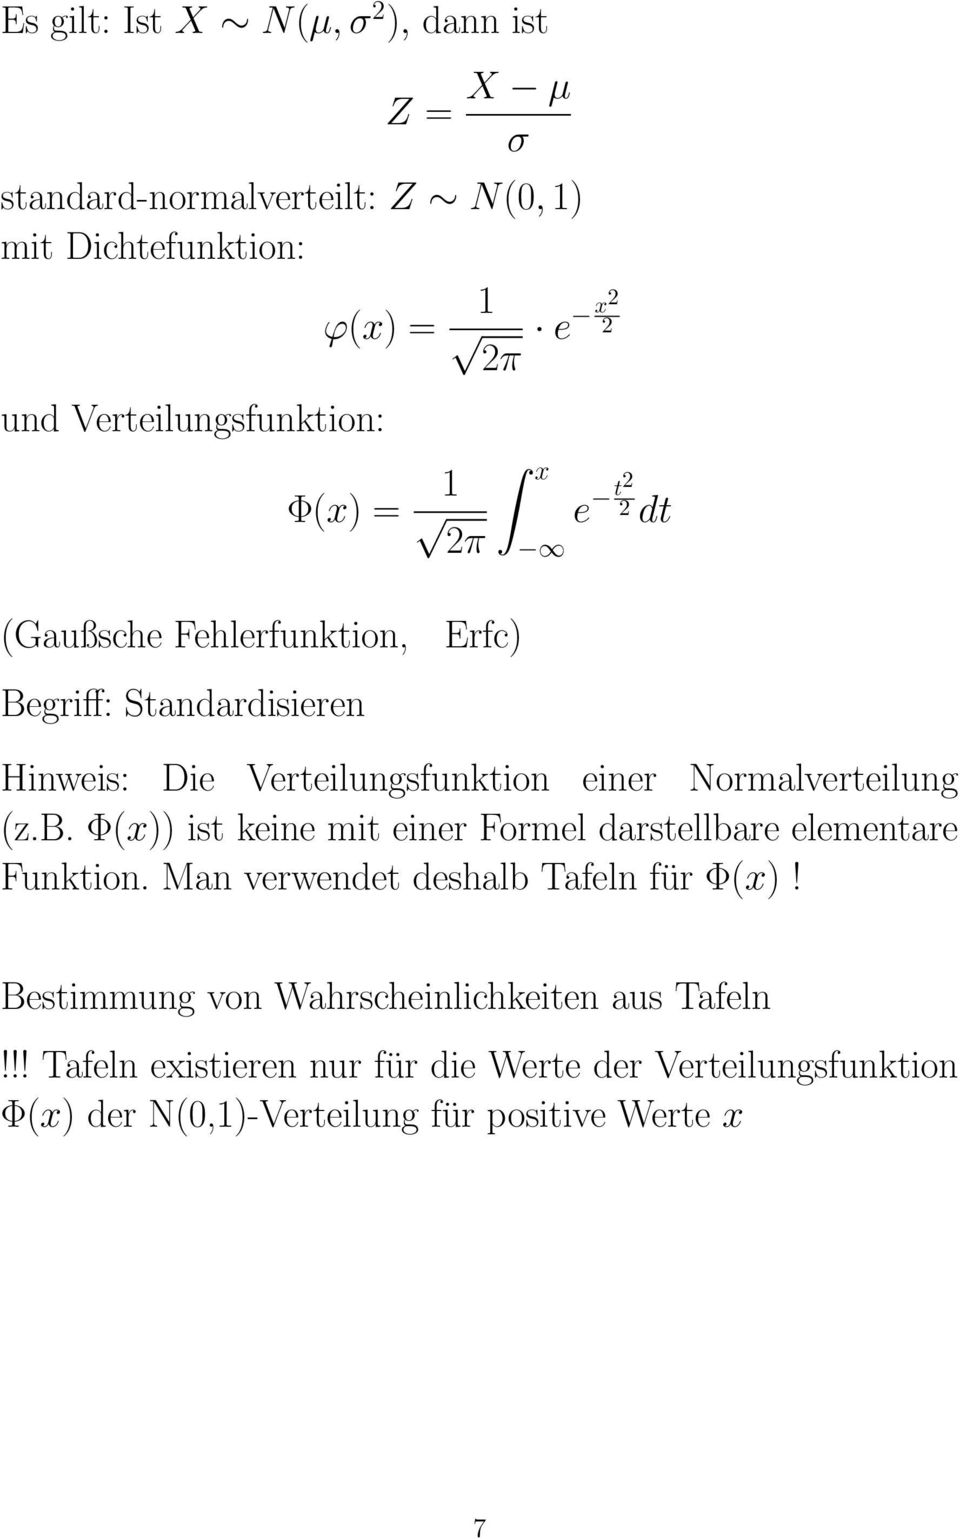 einer Normalverteilung (z.b. Φ(x)) ist keine mit einer Formel darstellbare elementare Funktion. Man verwendet deshalb Tafeln für Φ(x)!